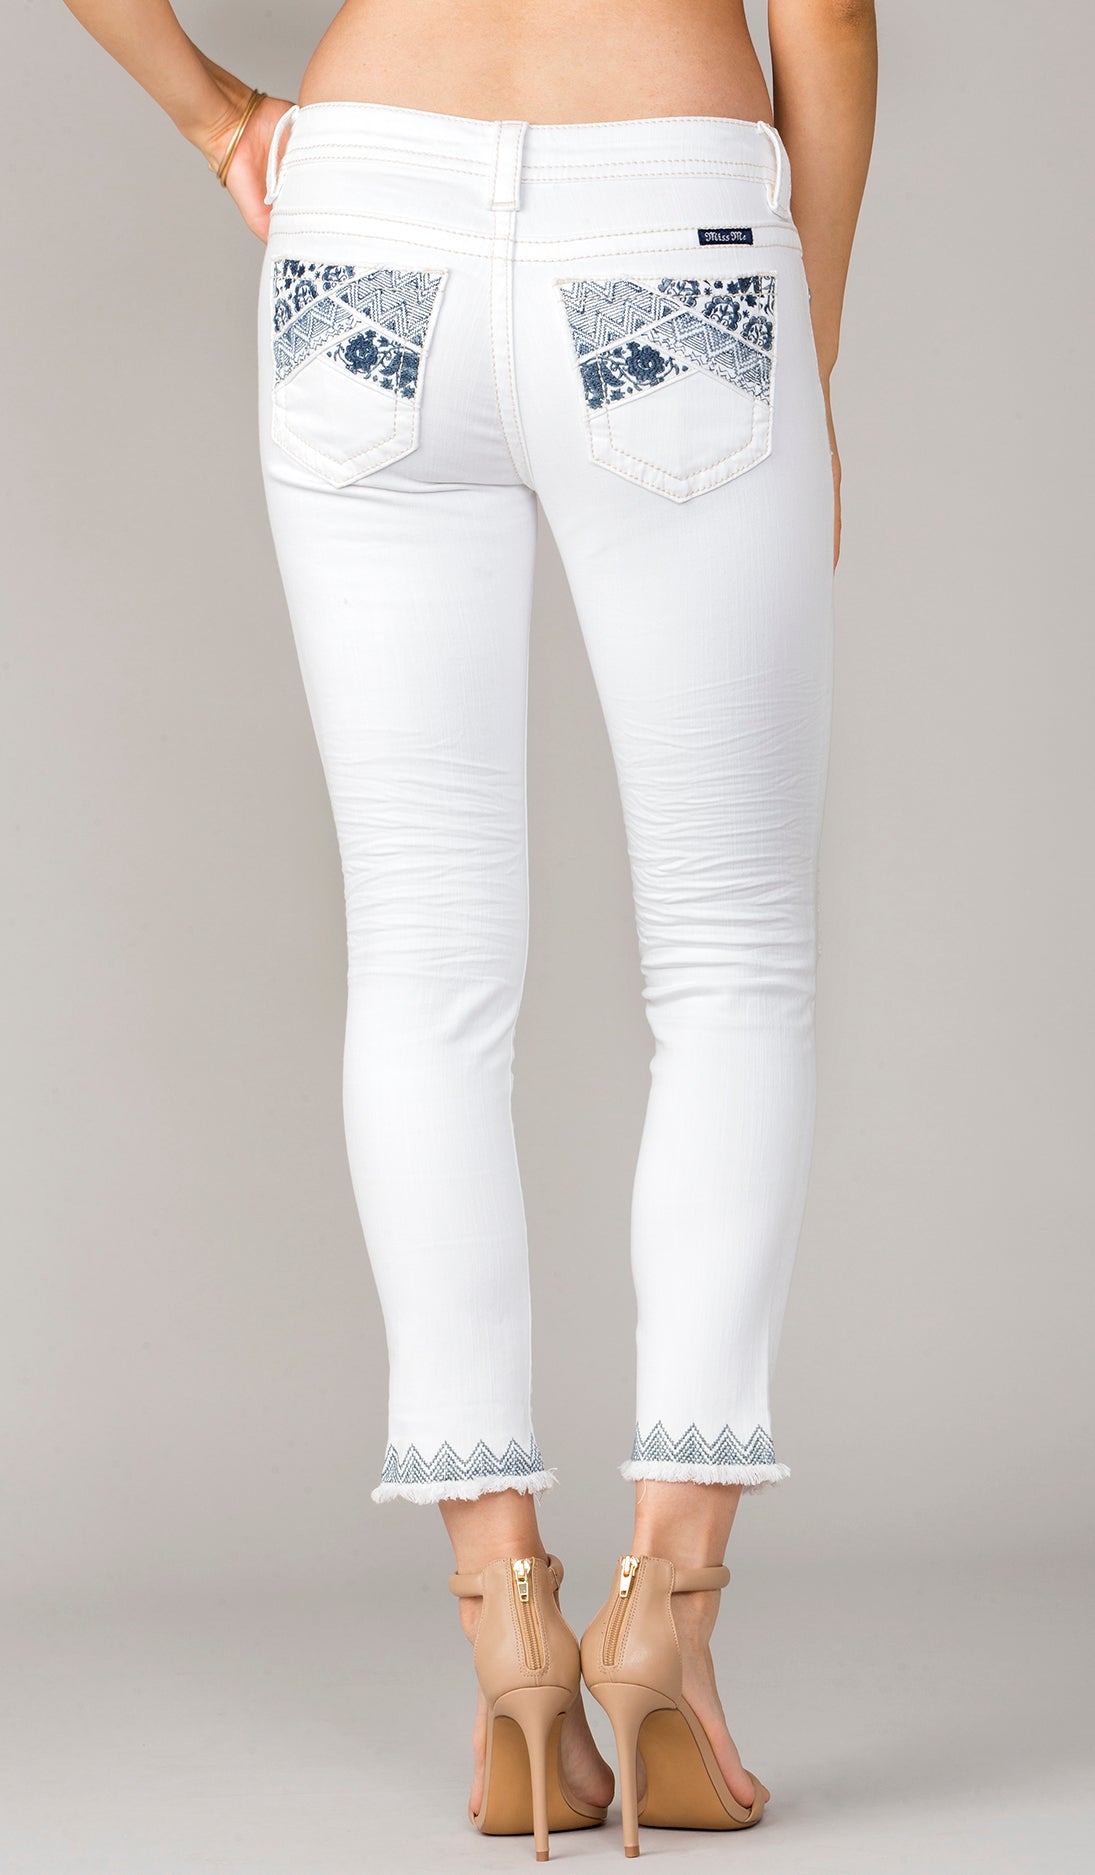 Miss Me Women's Jeans & Denim | Dillard's